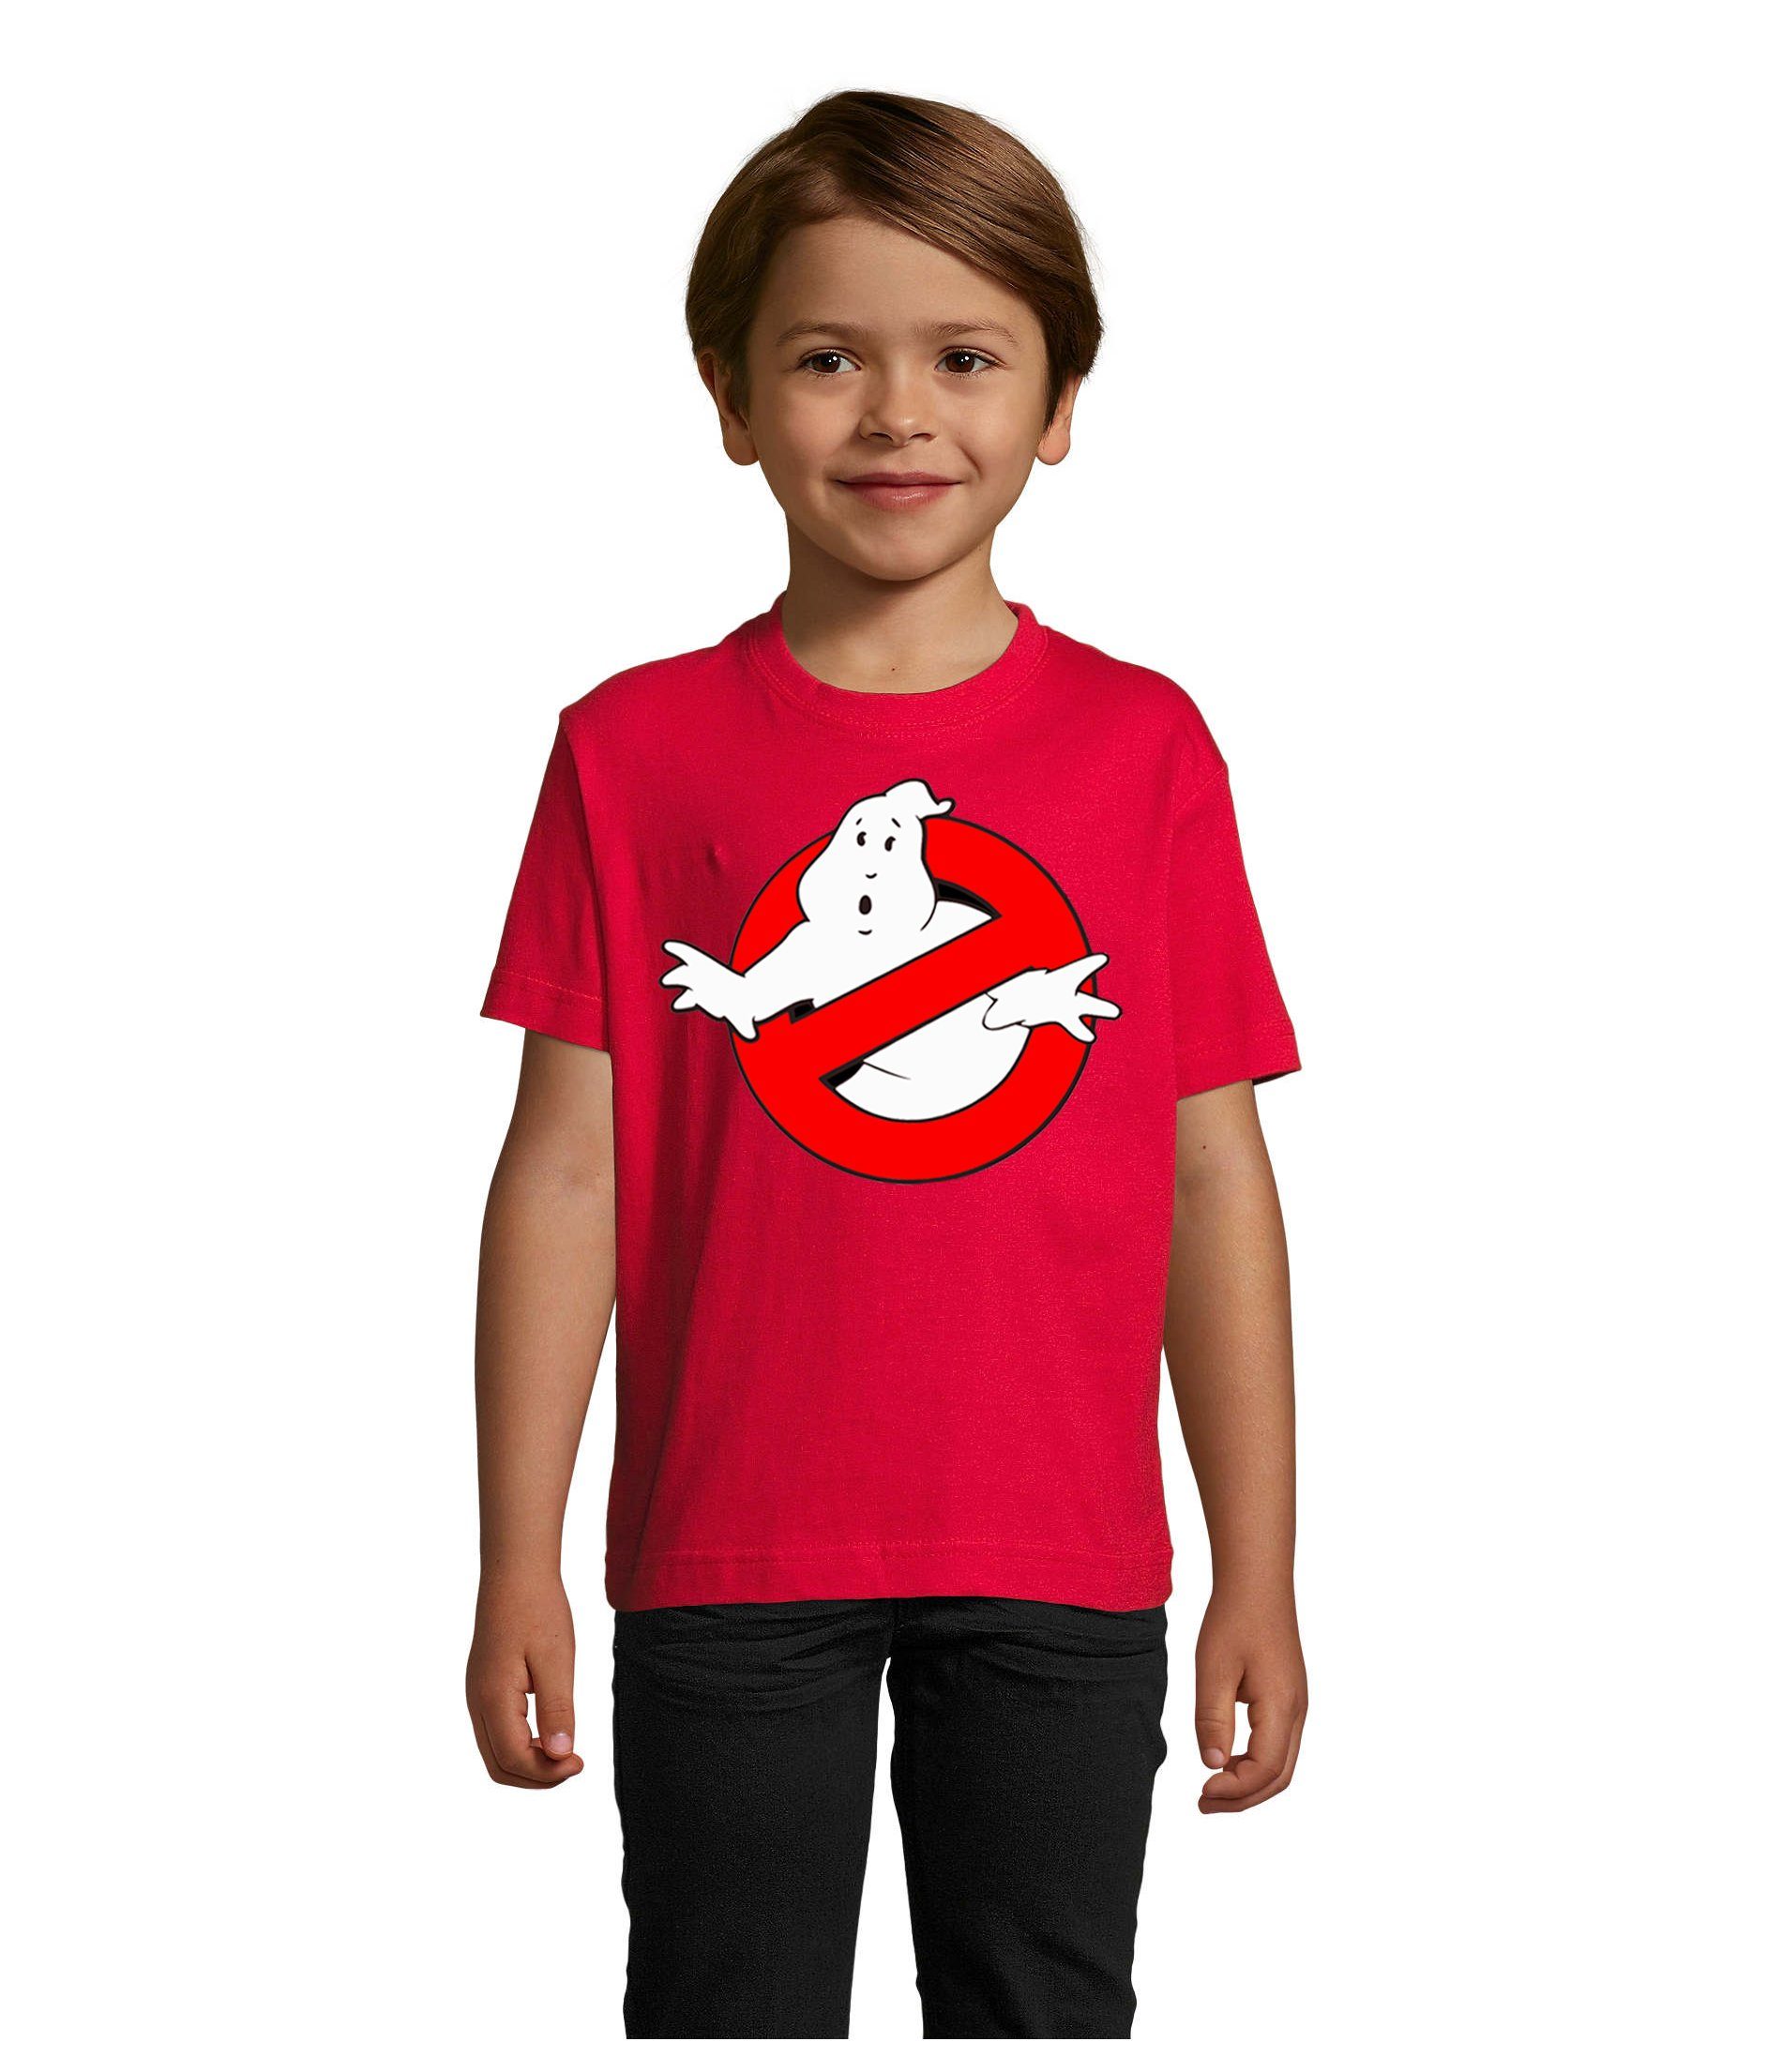 Blondie & Brownie T-Shirt Kinder Jungen & Mädchen Ghostbusters Ghost Geister Geisterjäger in vielen Farben Rot